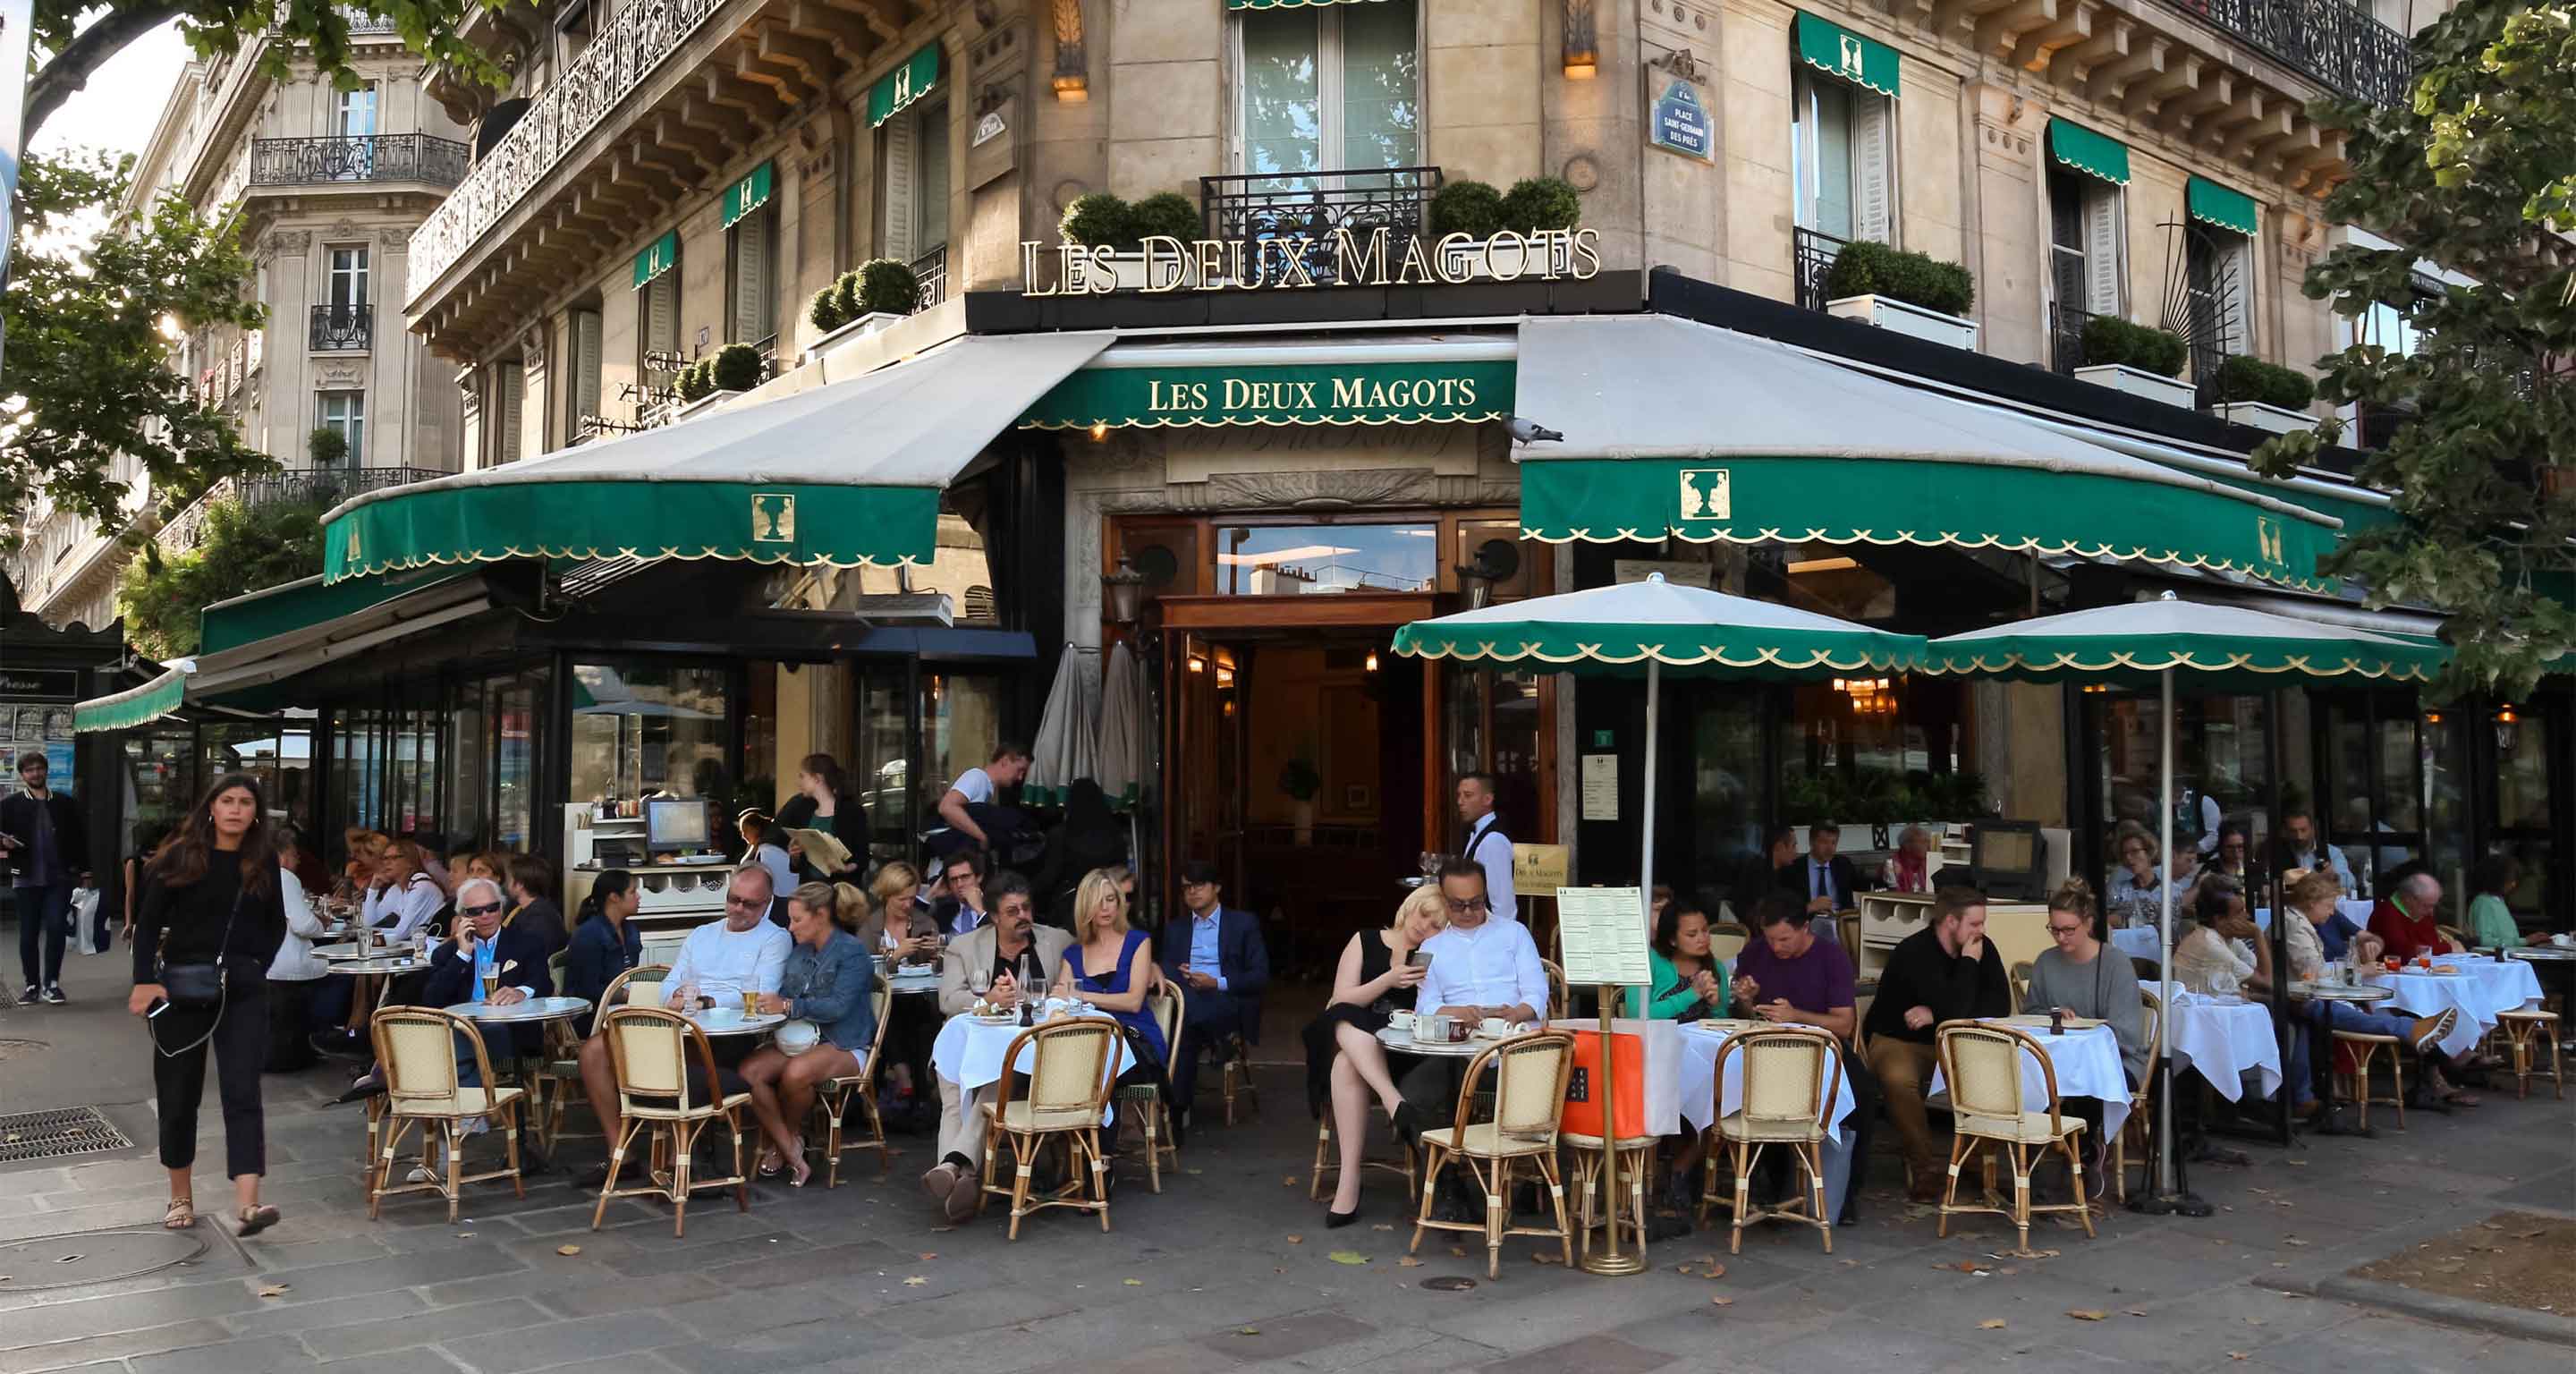 Café Les Deux Magots in Paris.